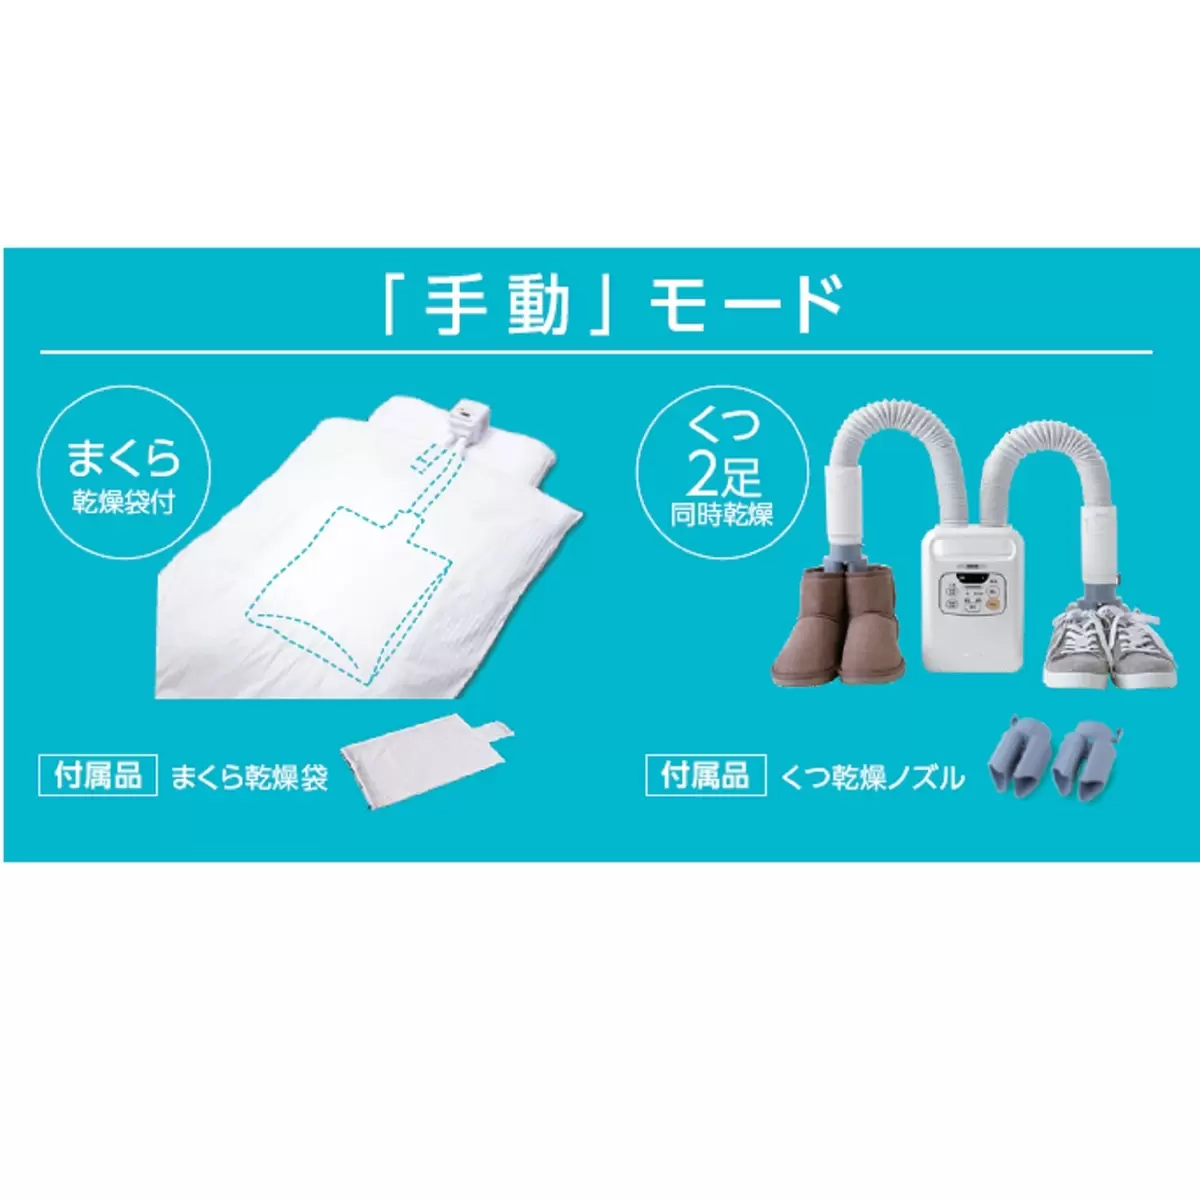 アイリスオーヤマ 布団乾燥機カラリエ ツインノズル | Costco Japan